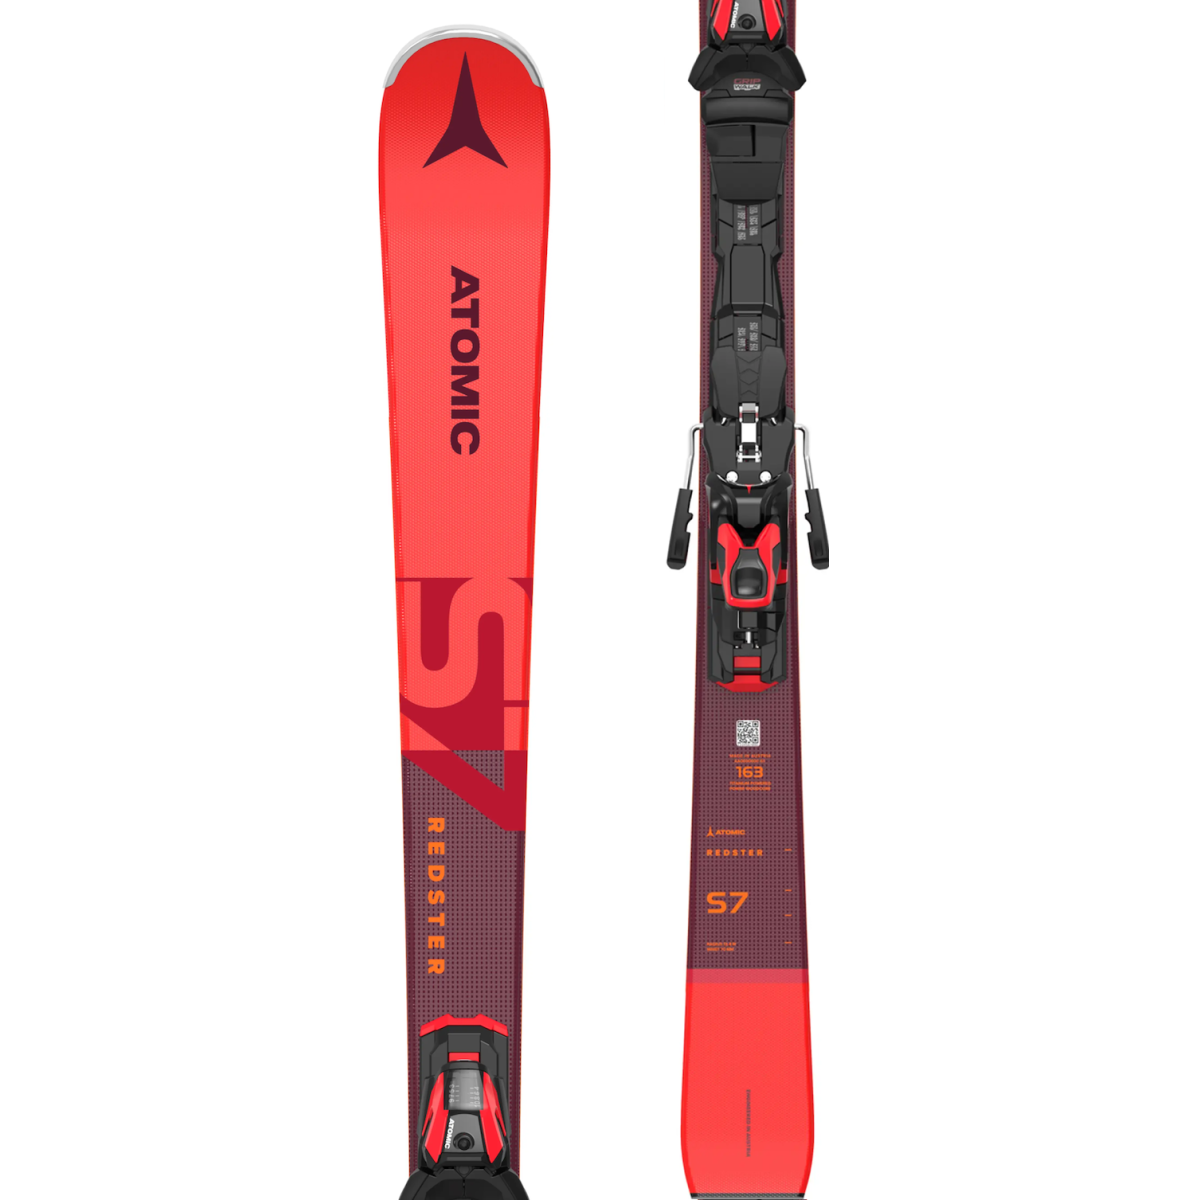 ATOMIC REDSTER S7 + M 12 GW alpine skis